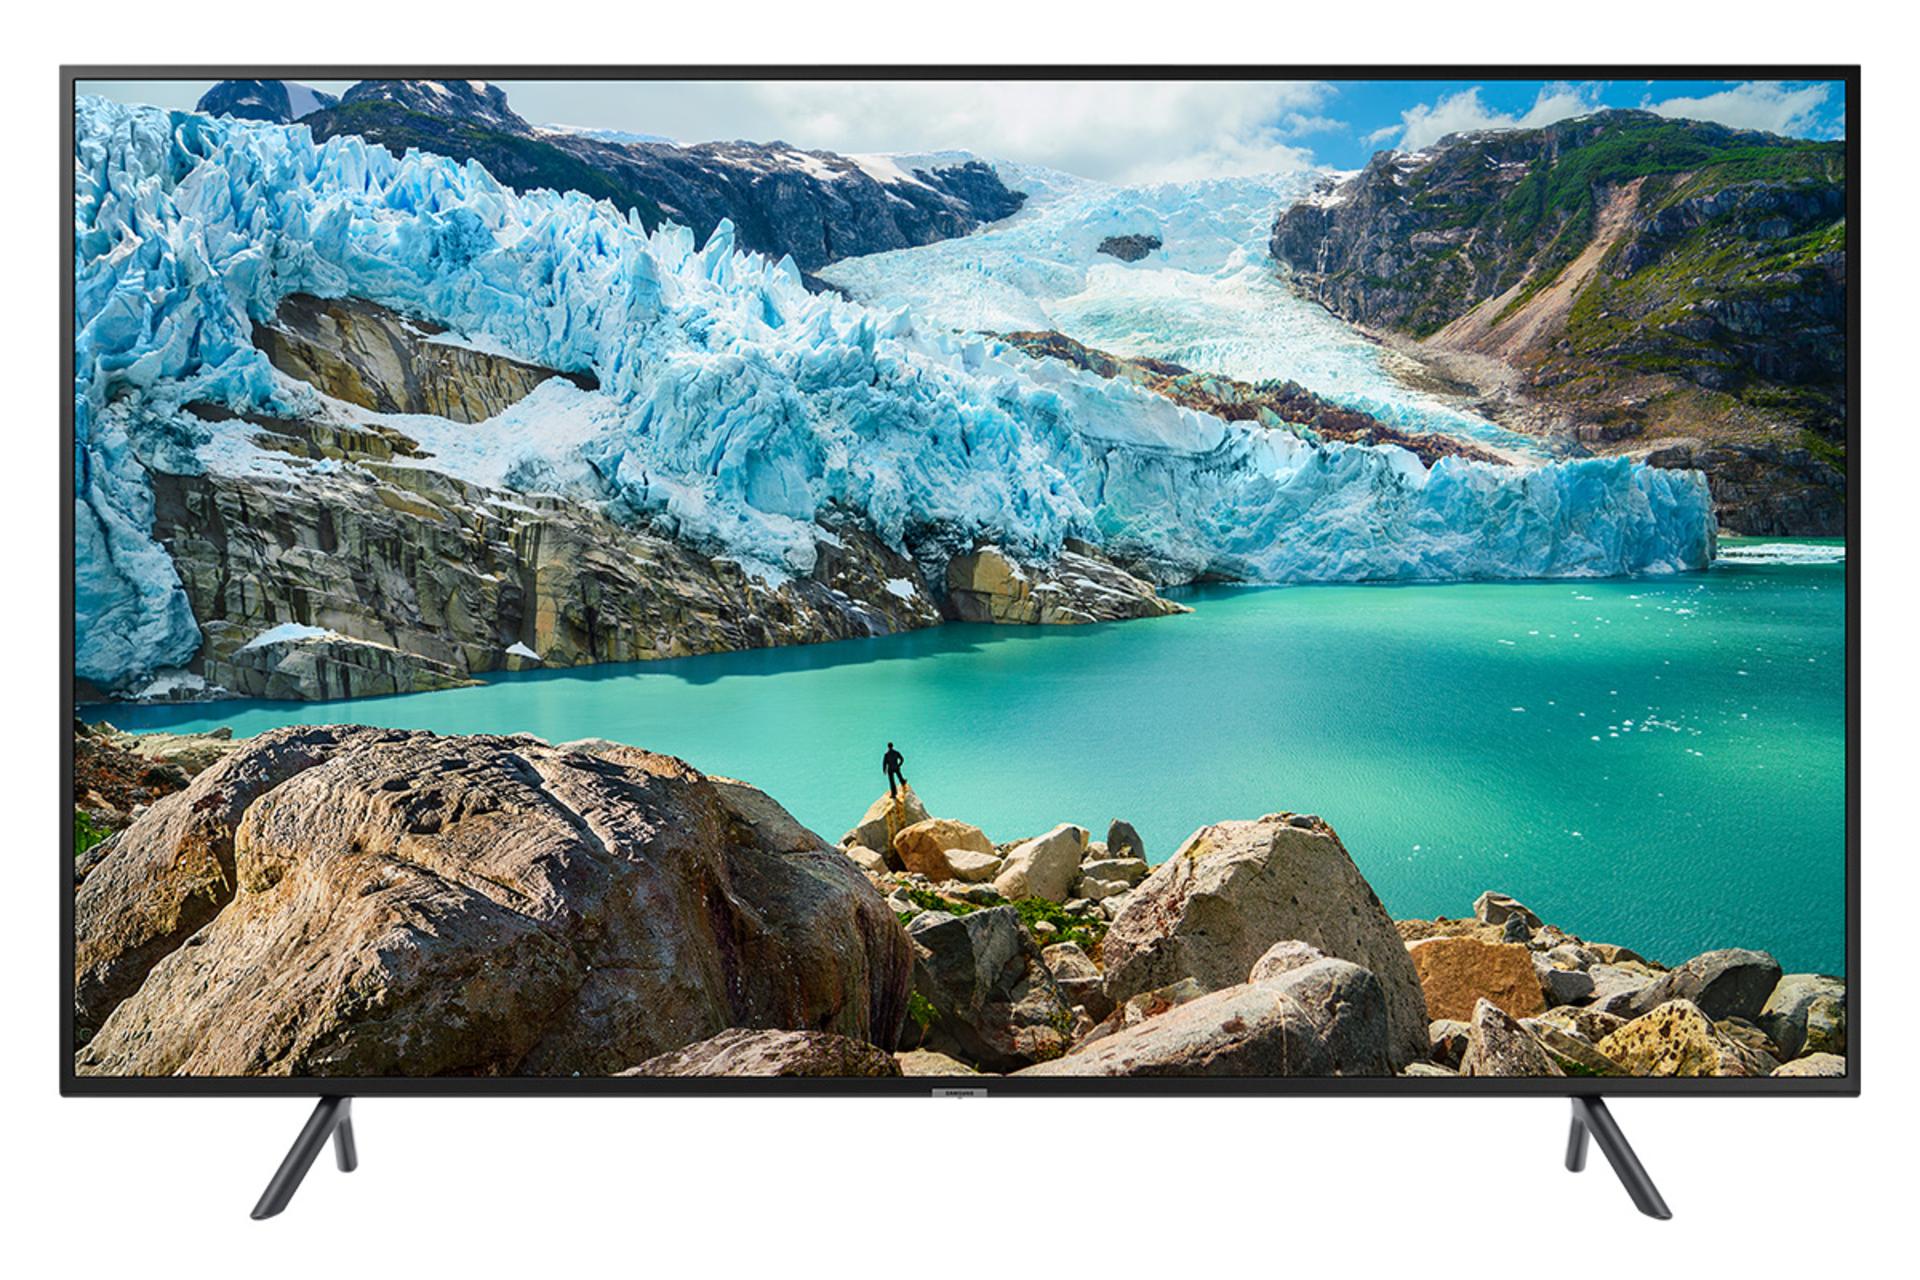 نمای جلو تلویزیون سامسونگ RU7170 مدل 43 اینچ با صفحه روشن